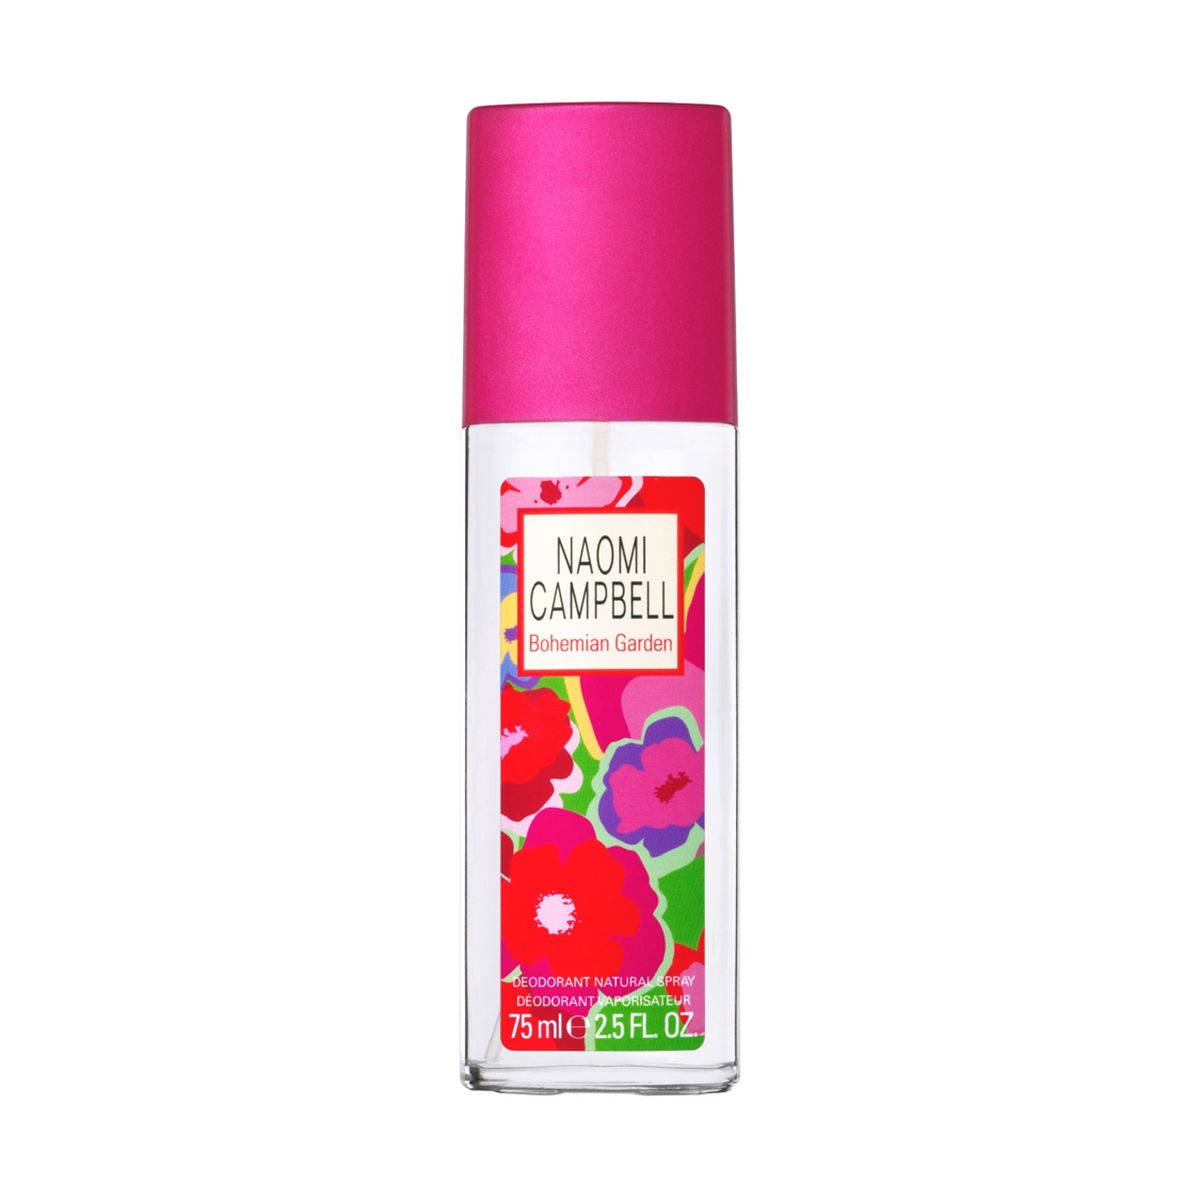 Naomi Campbell Bohemian Garden Deodorant Spray Natural 75ml